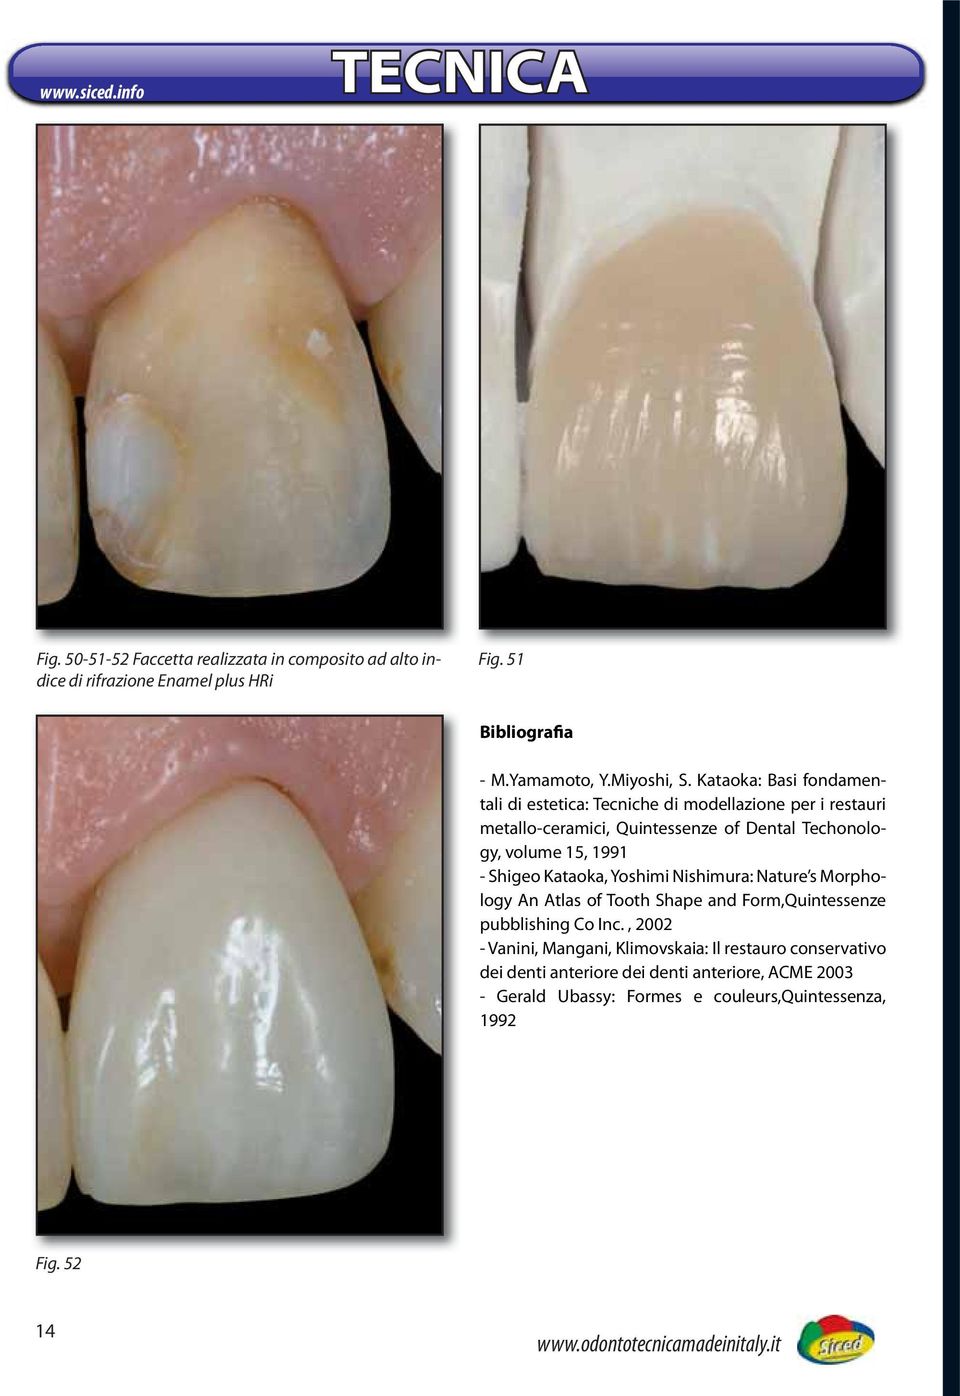 Kataoka: Basi fondamentali di estetica: Tecniche di modellazione per i restauri metallo-ceramici, Quintessenze of Dental Techonology, volume 15, 1991 -